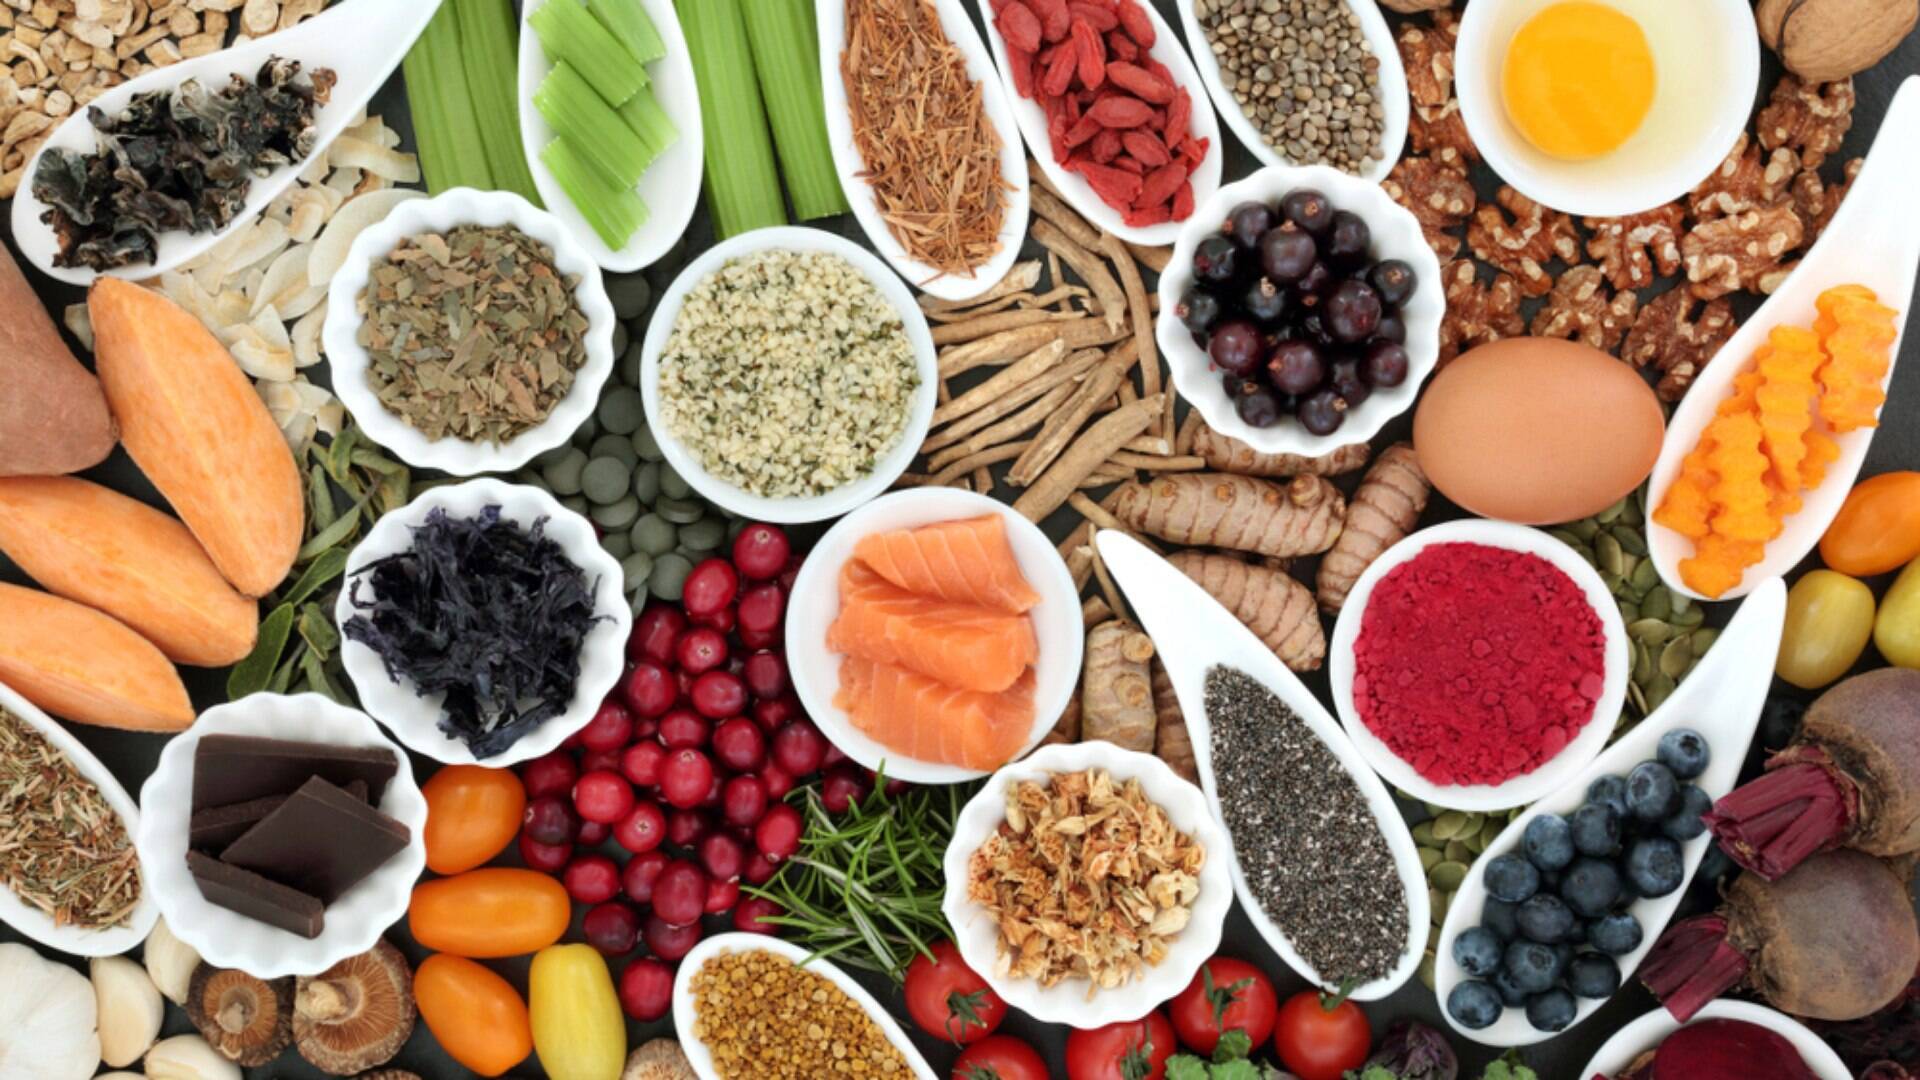 O Que S O Alimentos Funcionais Nutricionista Explica Os Principais Benef Cios O Bom Da Not Cia